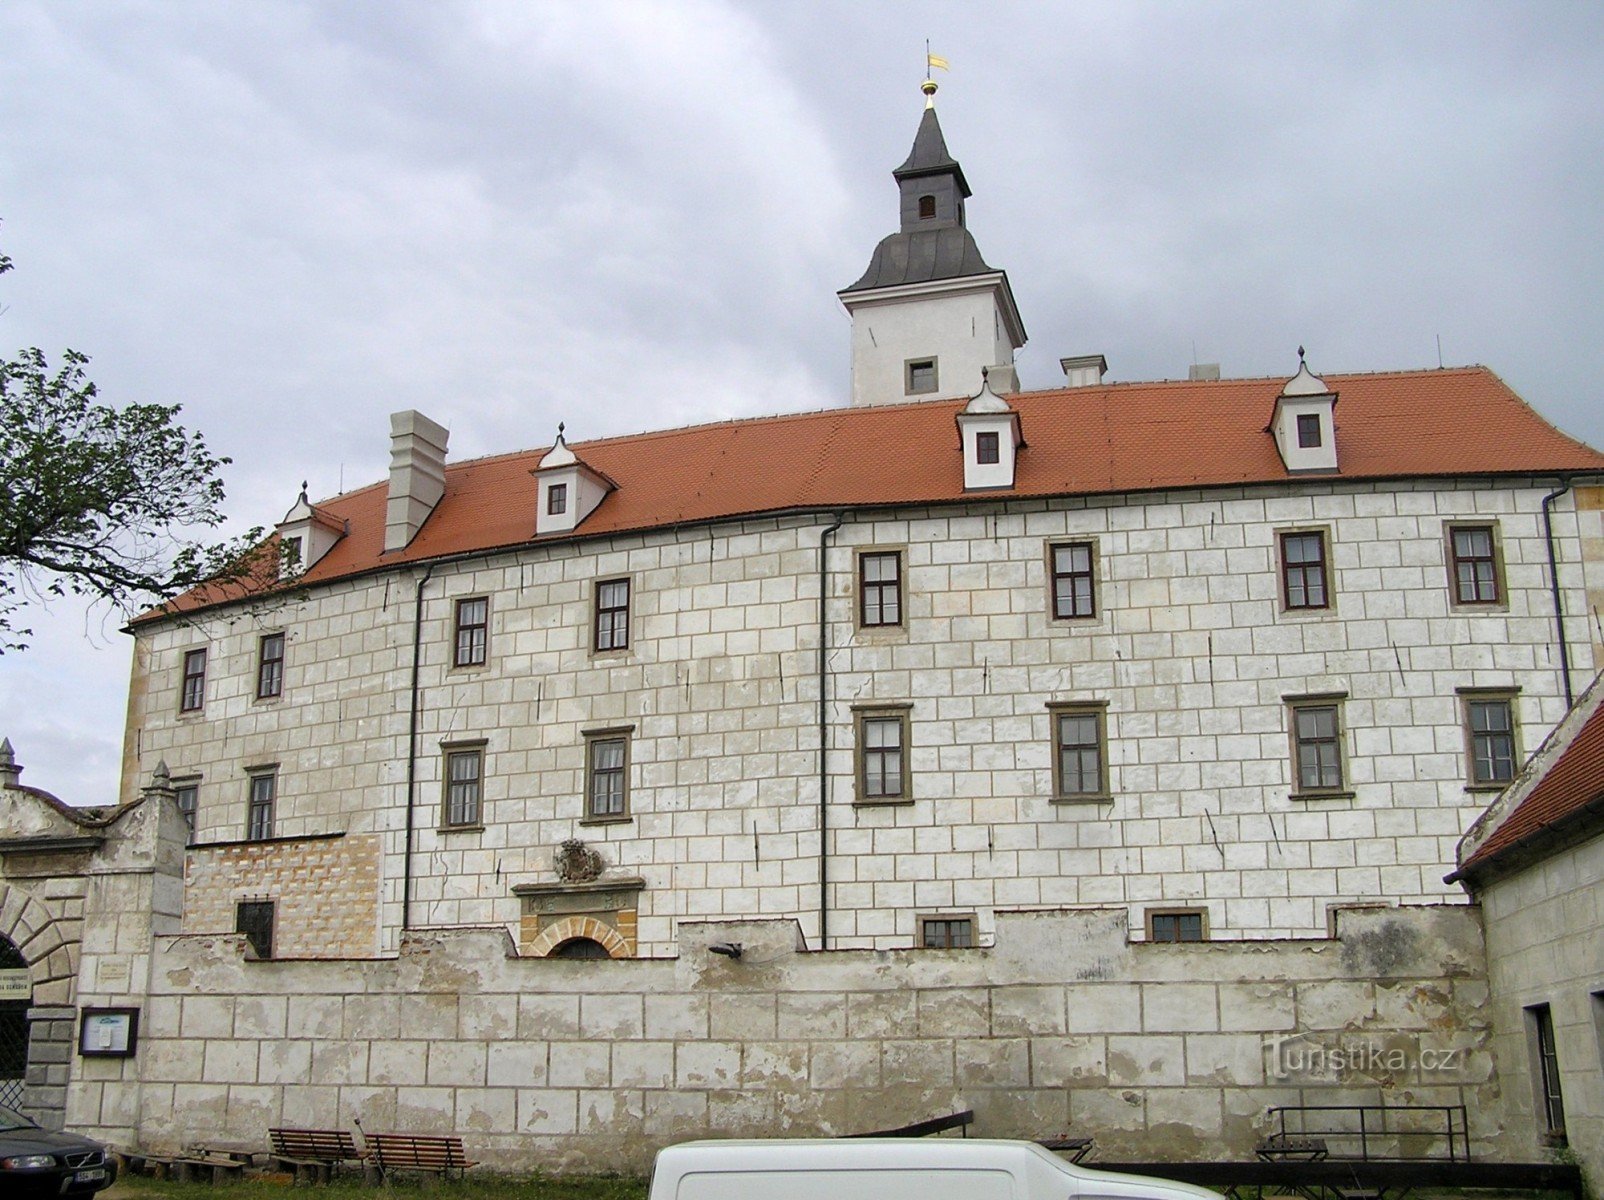 Jevišoice - Stari grad (avgust 2006)